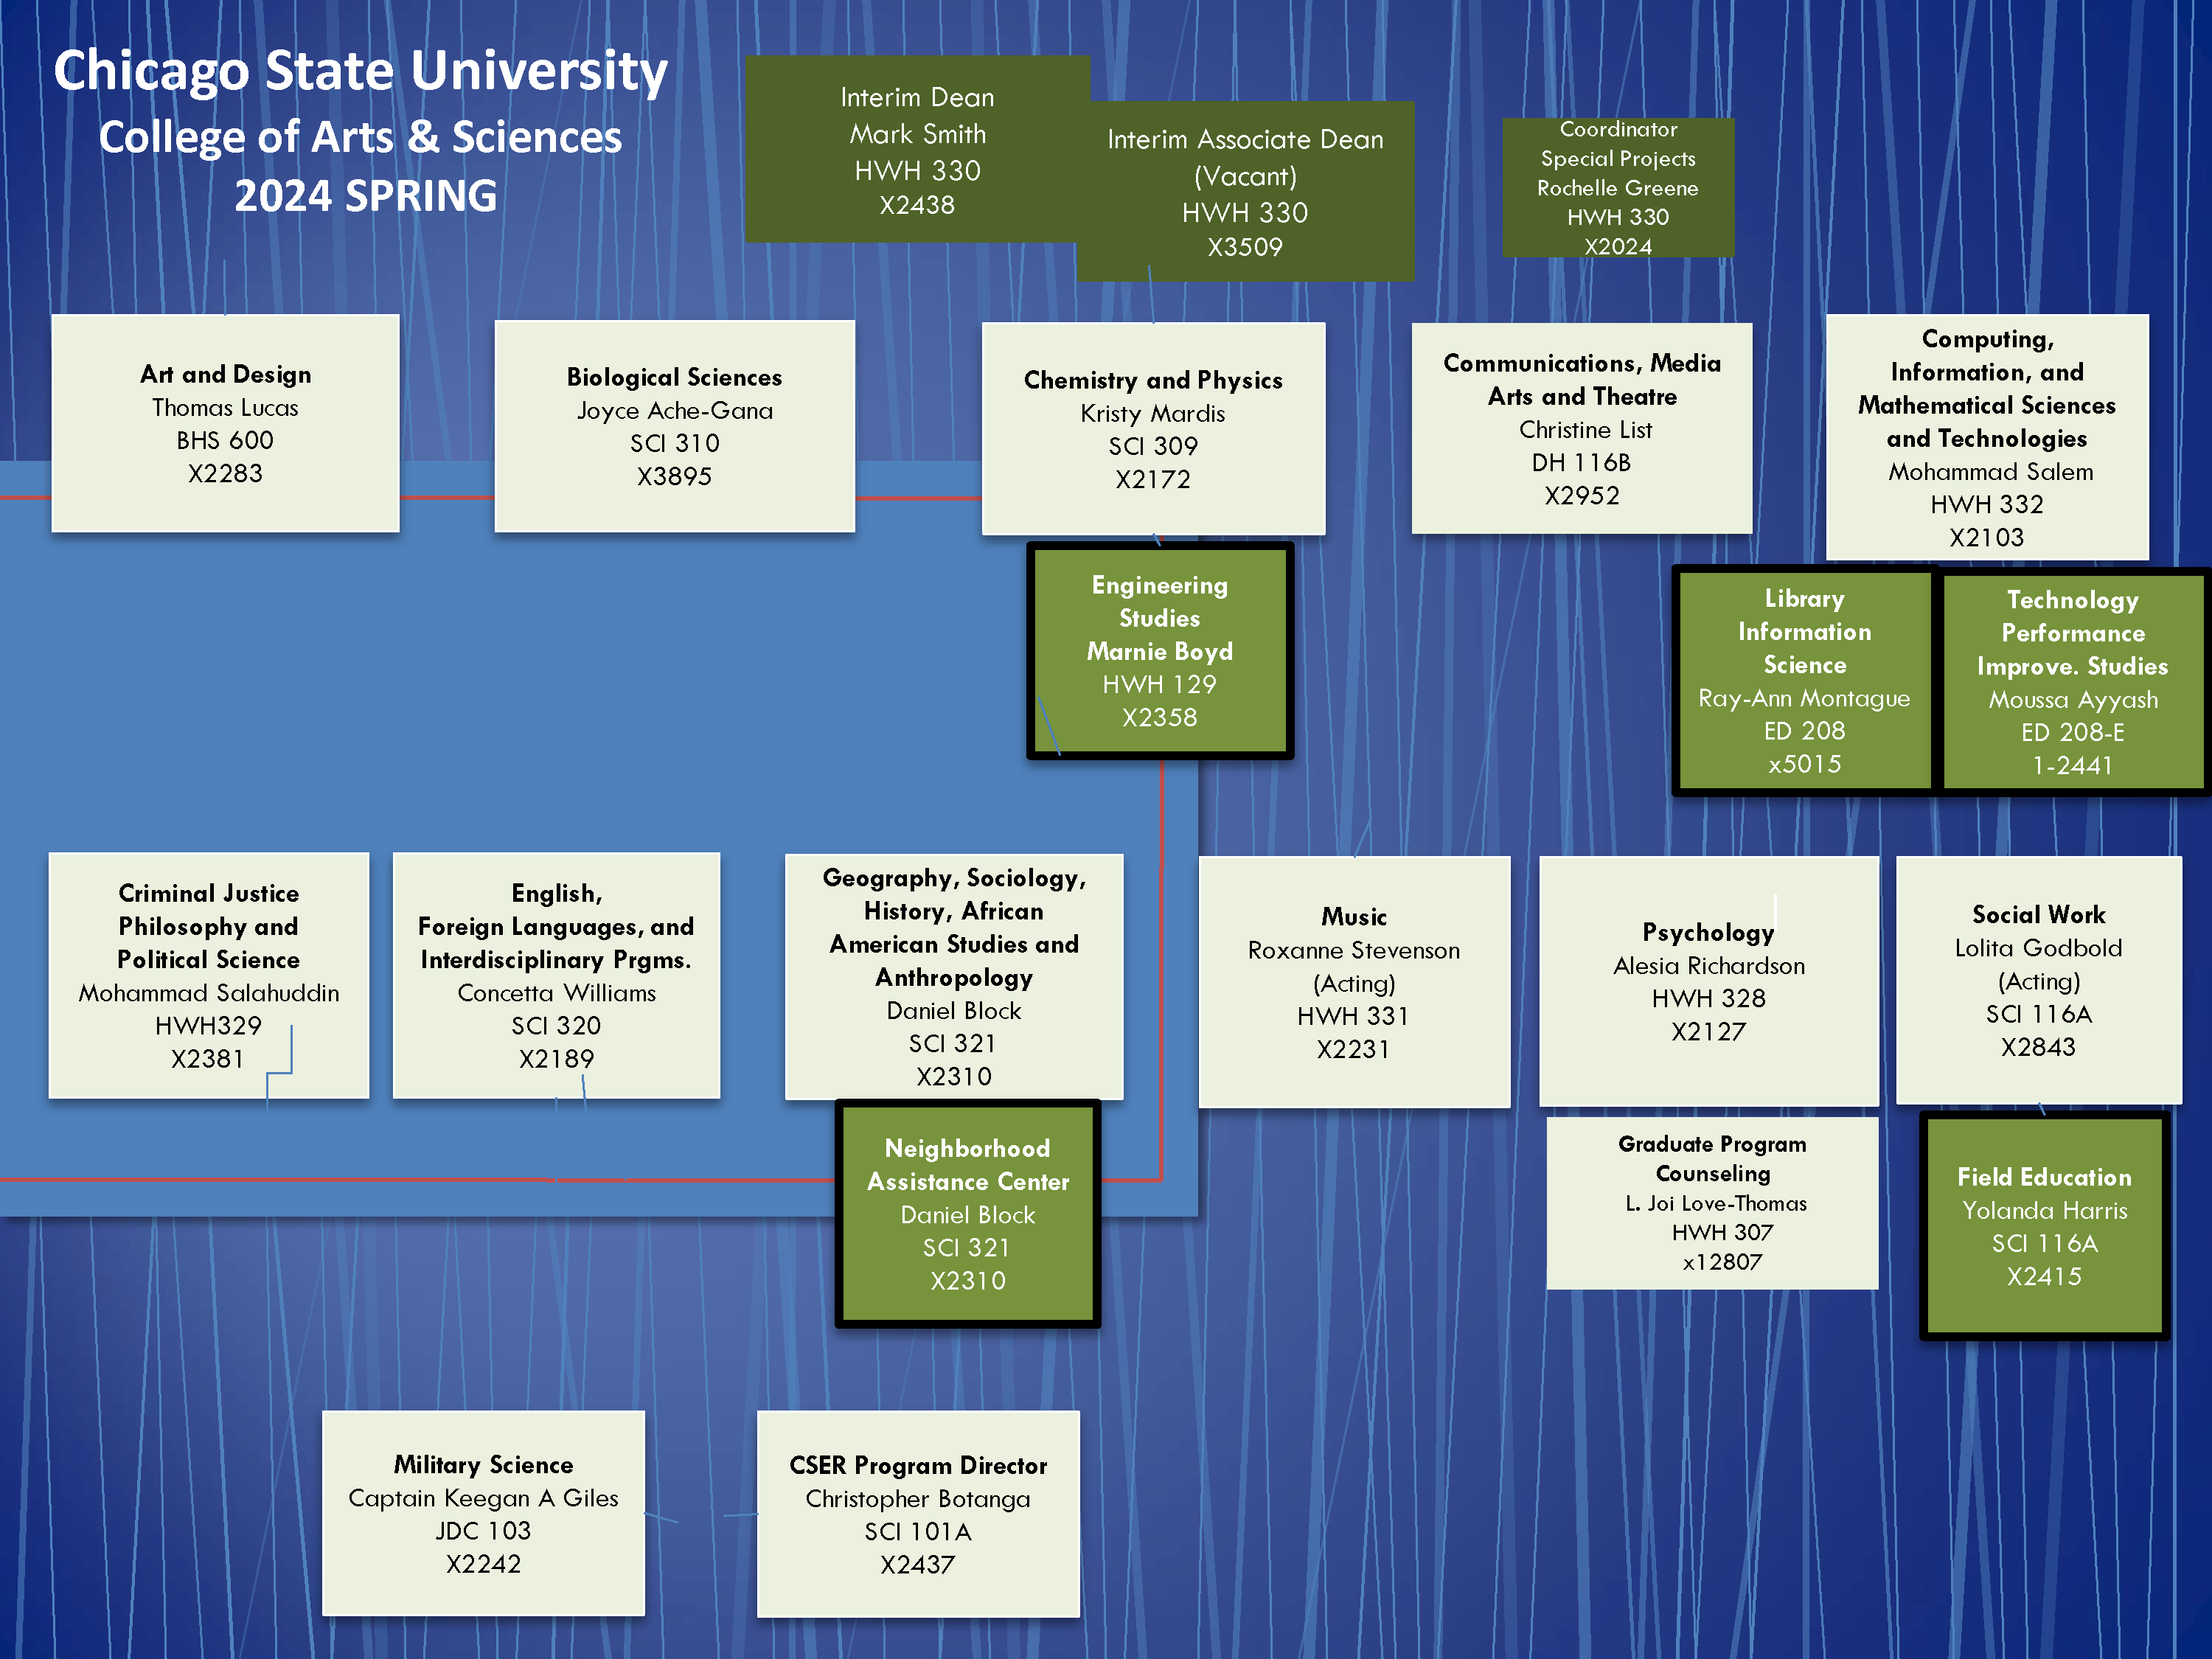 CAS Organizational Chart